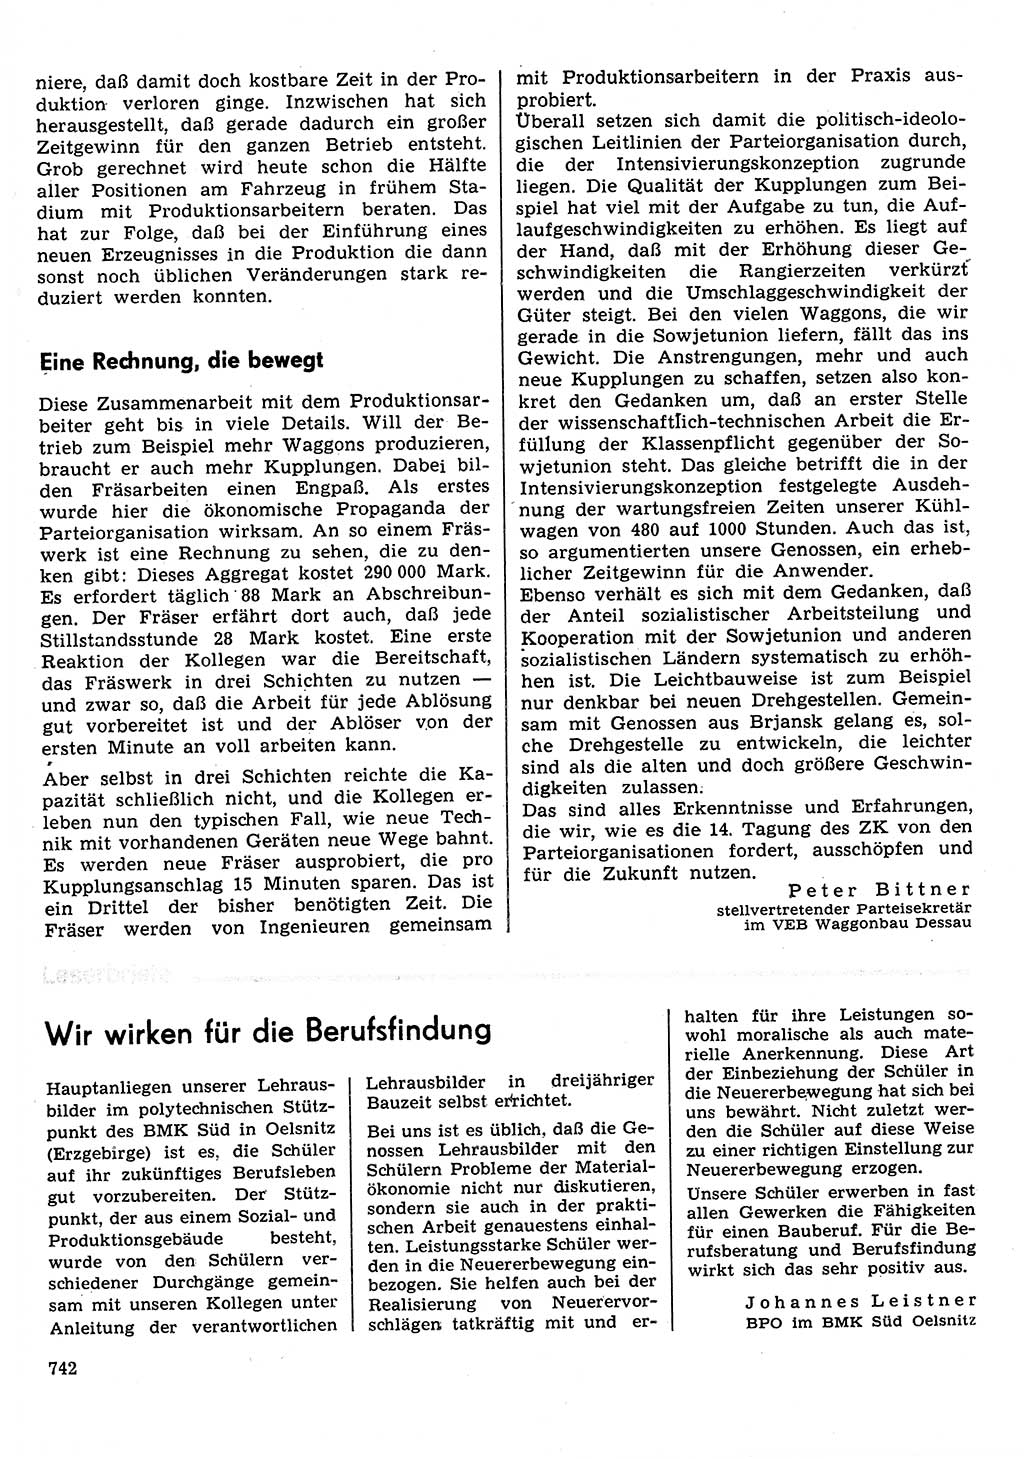 Neuer Weg (NW), Organ des Zentralkomitees (ZK) der SED (Sozialistische Einheitspartei Deutschlands) für Fragen des Parteilebens, 30. Jahrgang [Deutsche Demokratische Republik (DDR)] 1975, Seite 742 (NW ZK SED DDR 1975, S. 742)